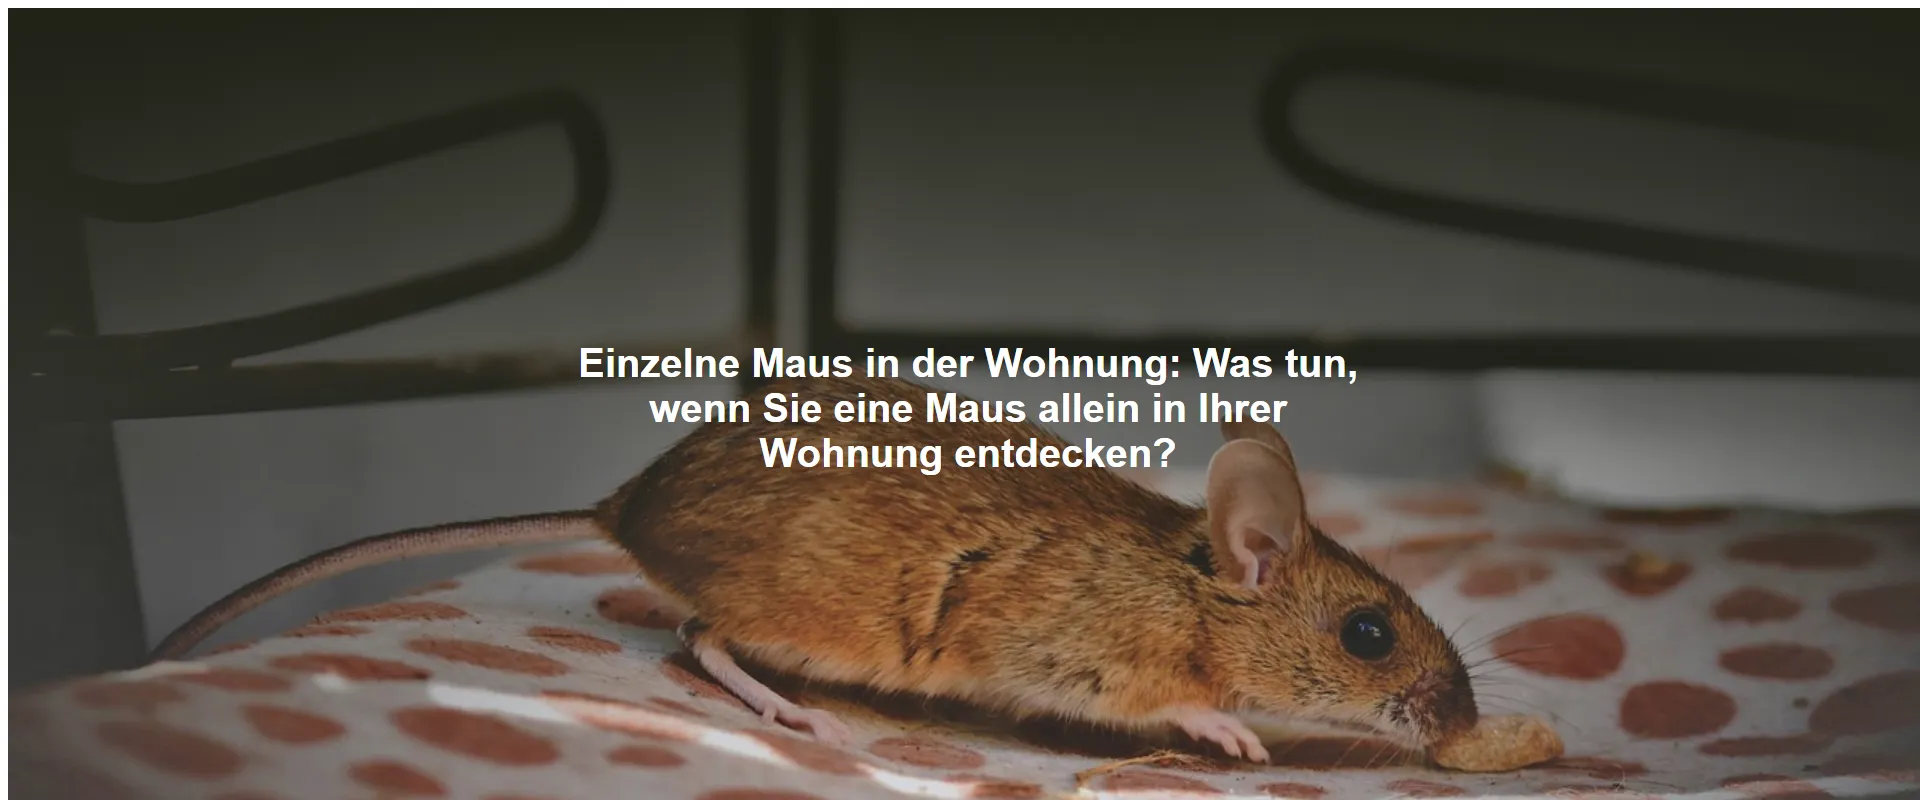 Einzelne Maus in der Wohnung – Was tun, wenn Sie eine Maus allein in Ihrer Wohnung entdecken?